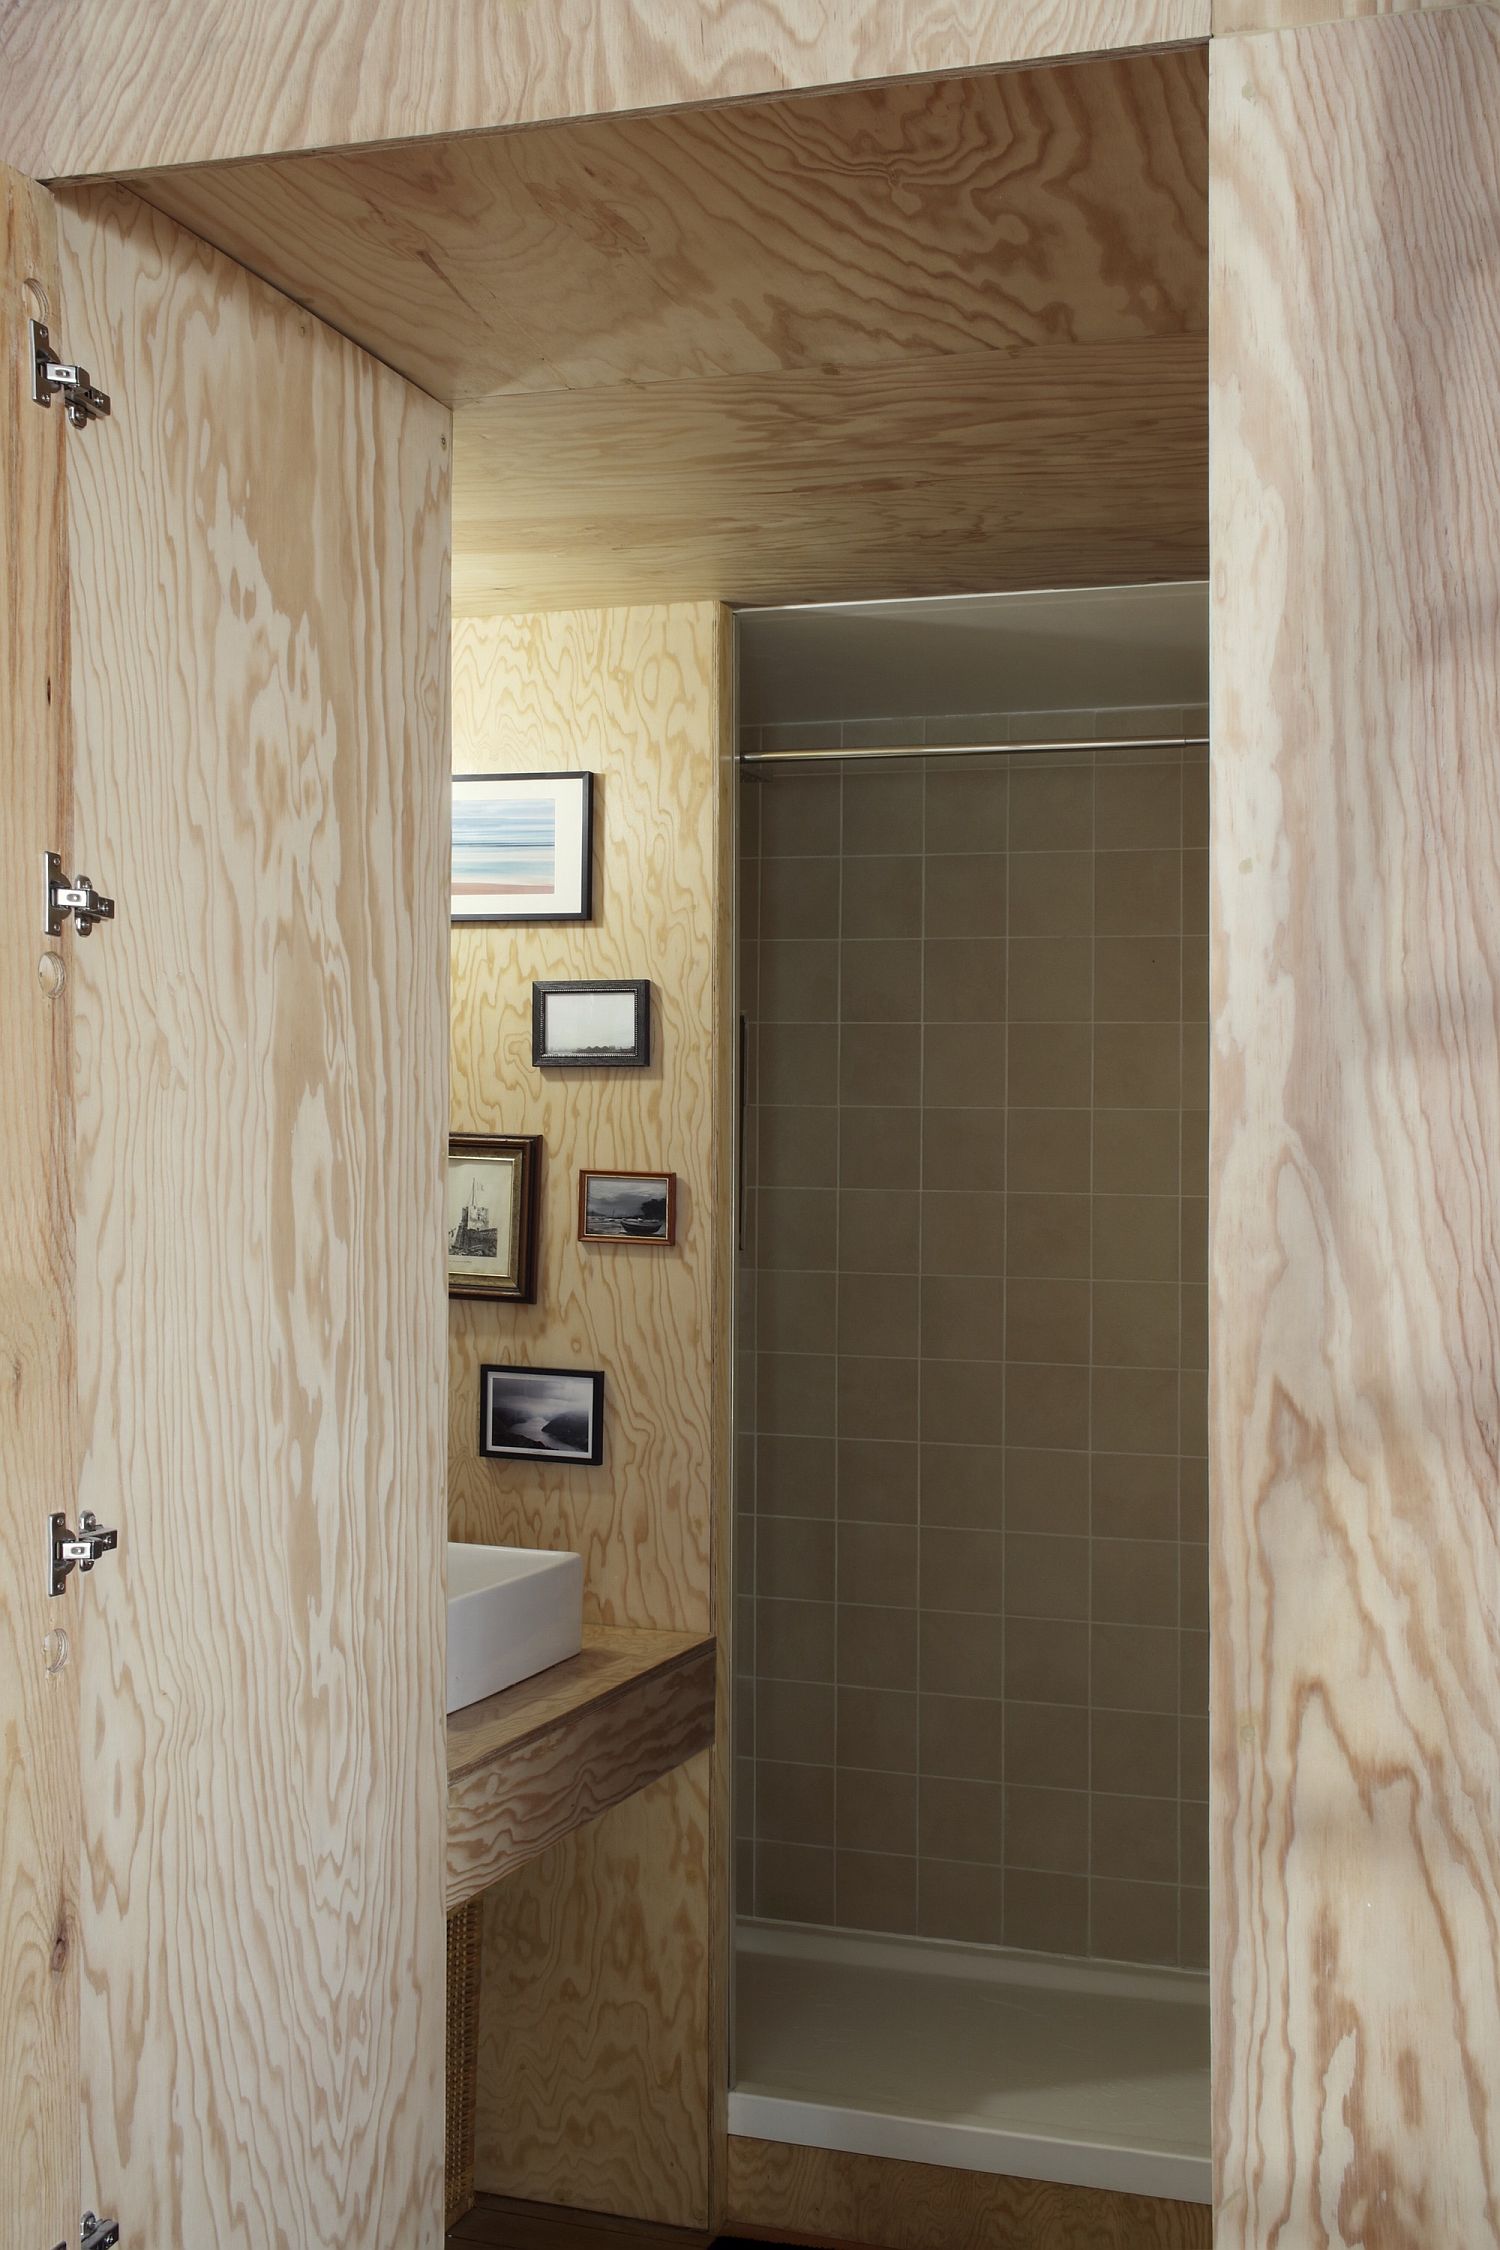 Căn hộ nhỏ làm từ gỗ cực xinh, biến nhà ở thành không gian trang trí trong từng góc nhỏ - Ảnh 8.